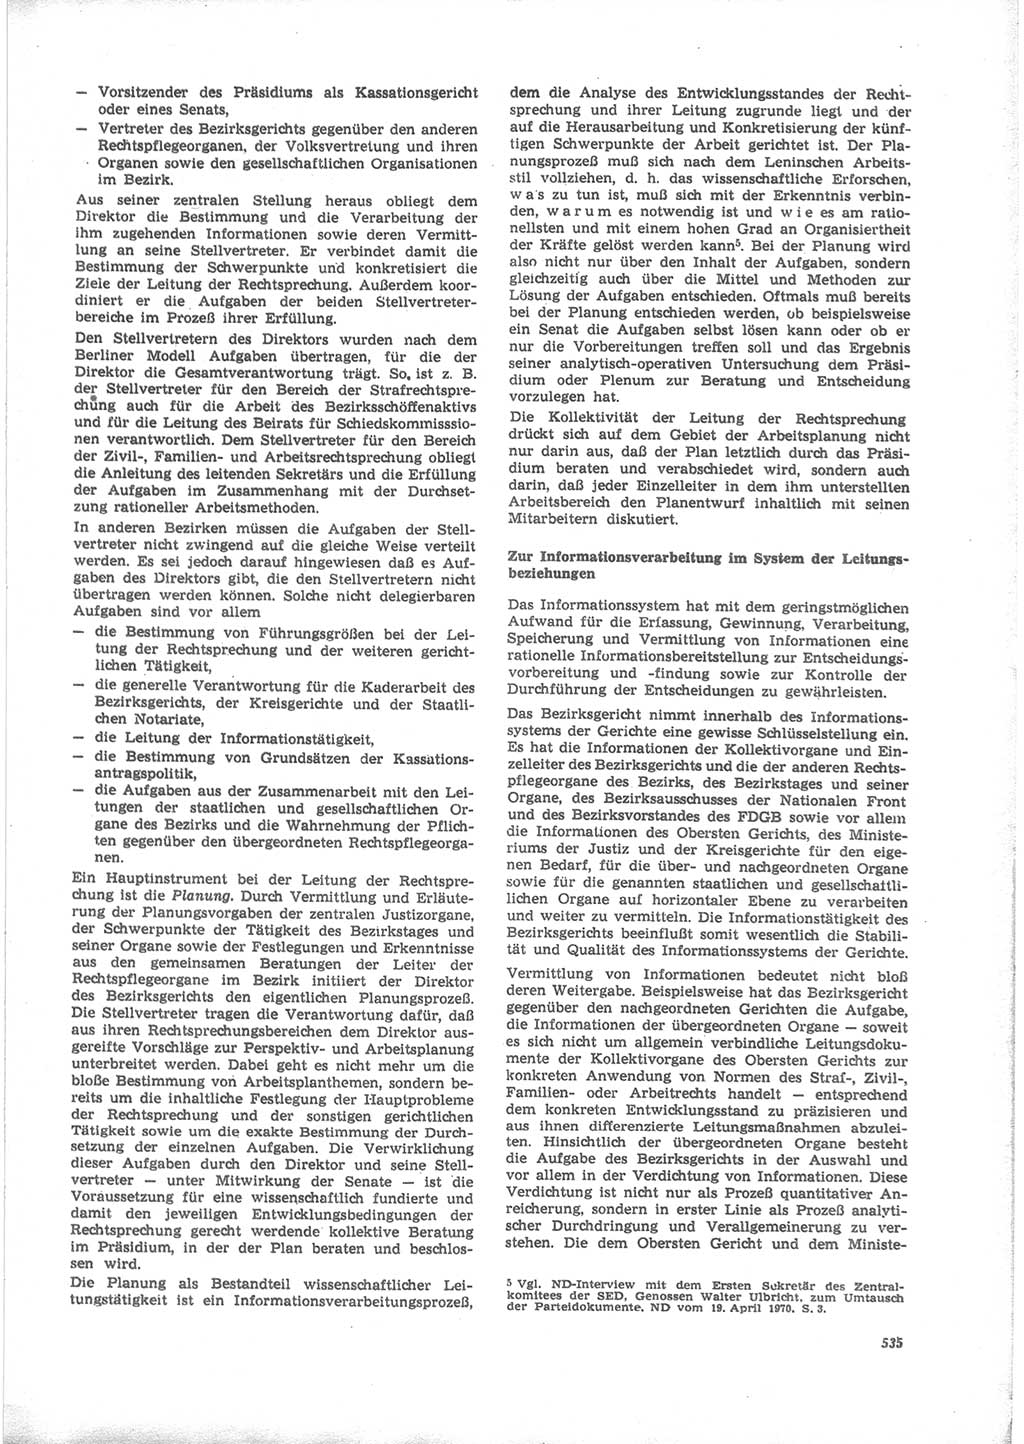 Neue Justiz (NJ), Zeitschrift für Recht und Rechtswissenschaft [Deutsche Demokratische Republik (DDR)], 24. Jahrgang 1970, Seite 535 (NJ DDR 1970, S. 535)